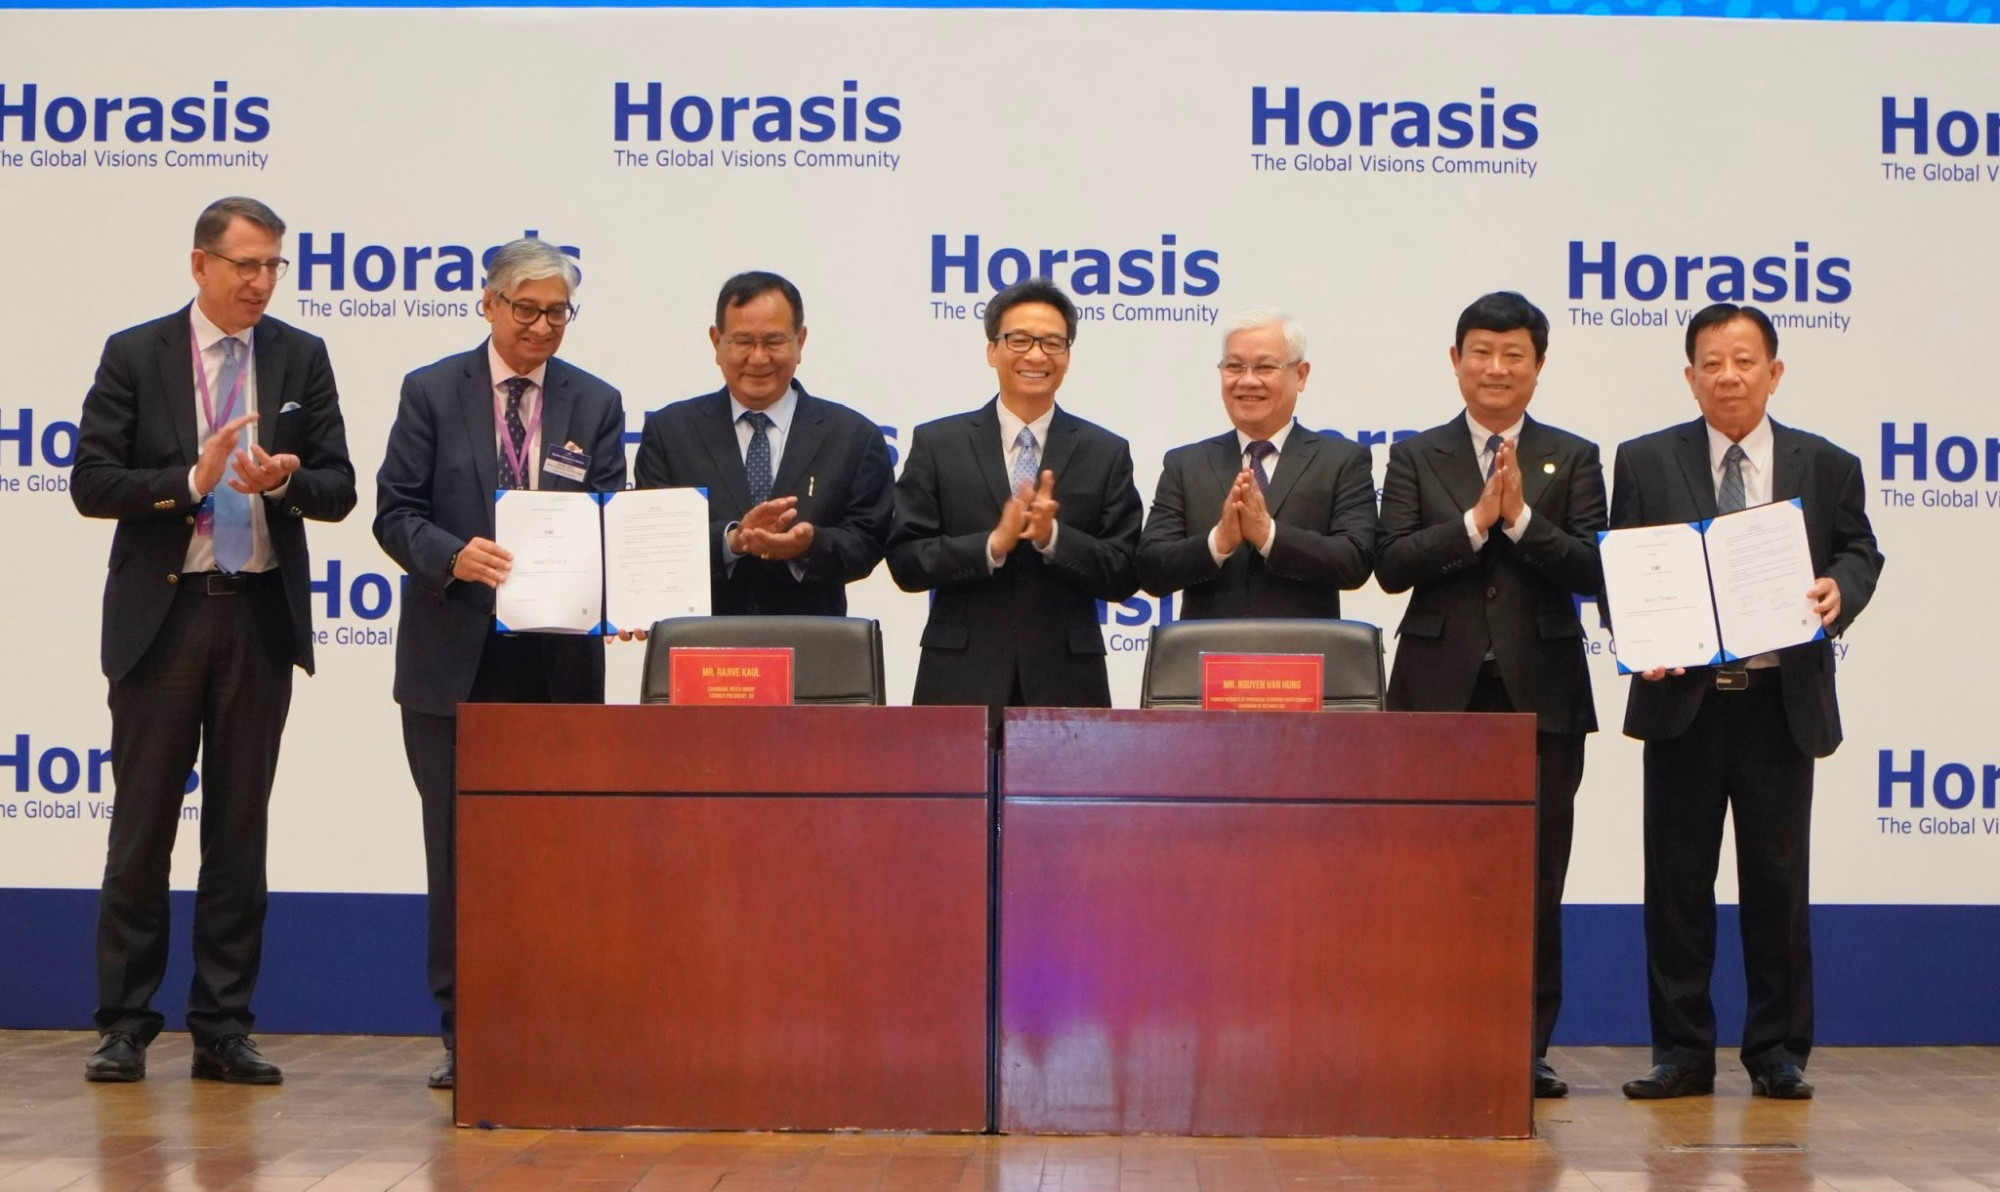 Diễn đàn hợp tác kinh tế Horasis sẽ mở ra nhiều cơ hội phát triển kinh tế